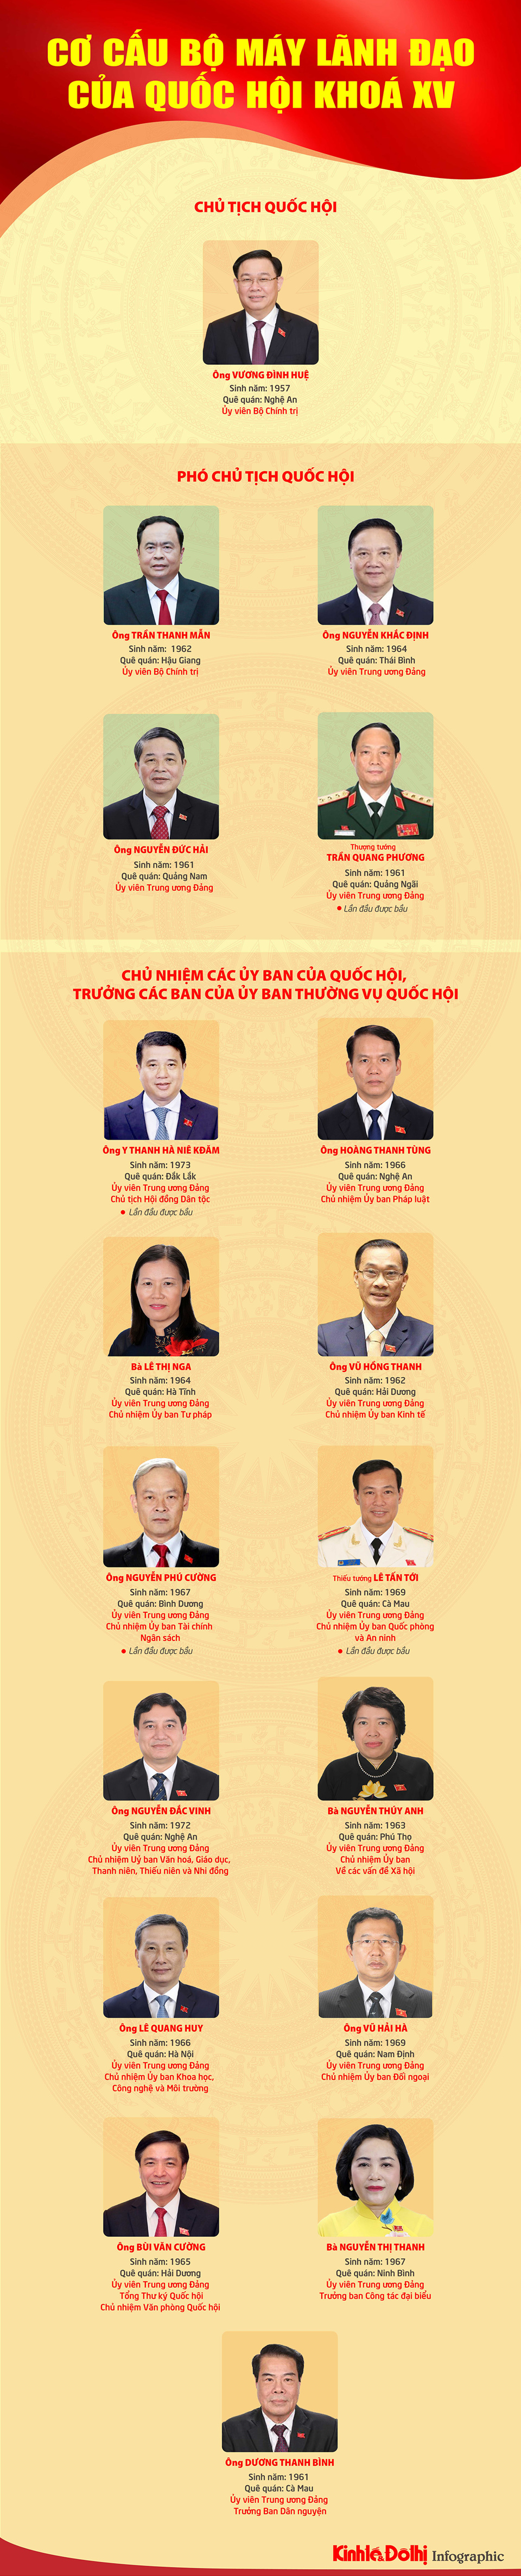 [Infographic] Bộ máy lãnh đạo của Quốc hội khóa XV, nhiệm kỳ 2021-2026 - Ảnh 1